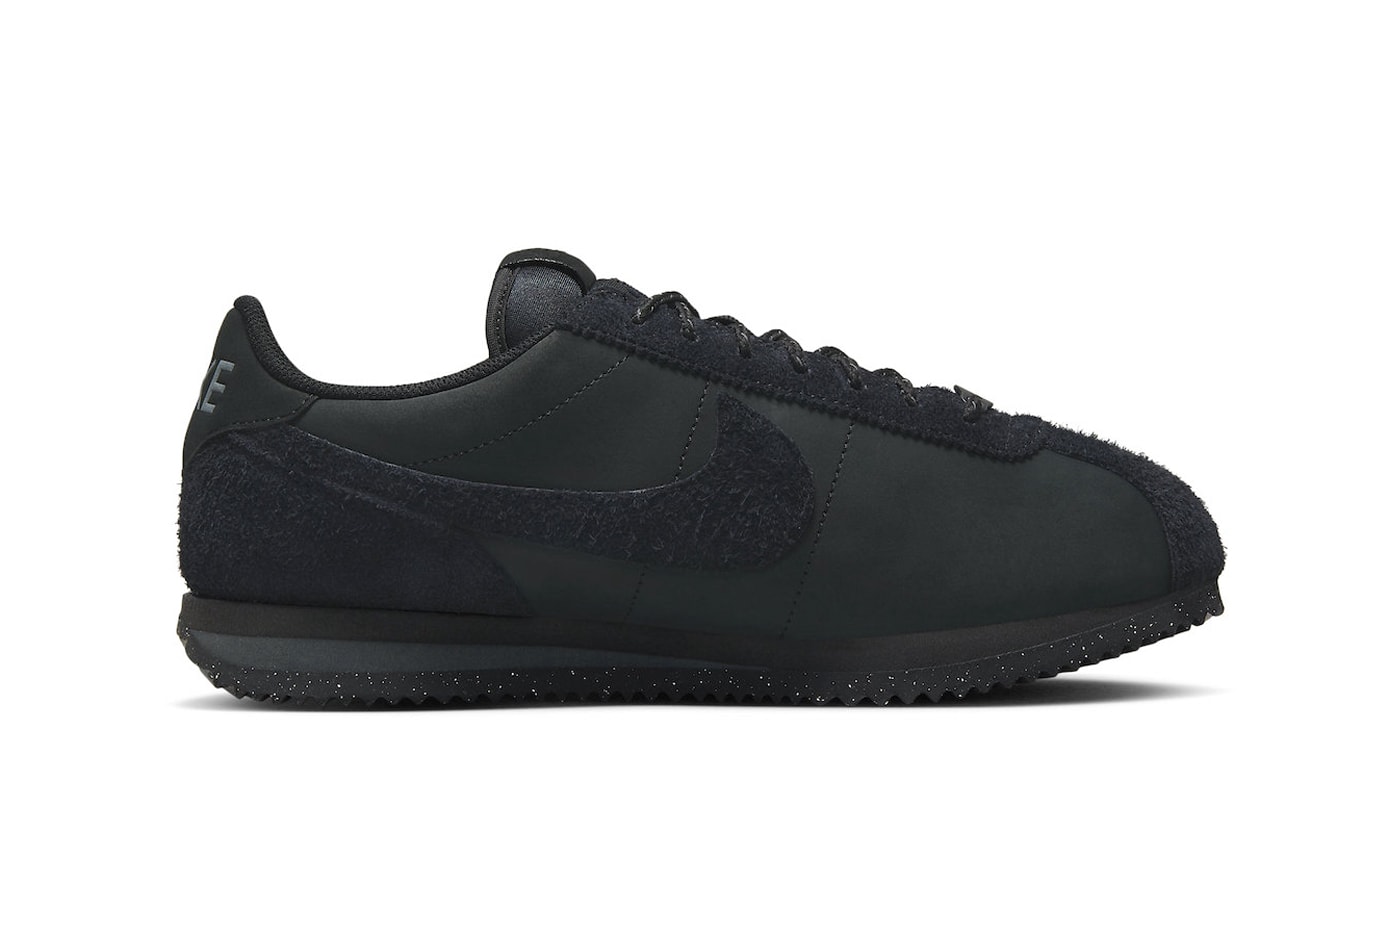 Kalmerend uitvinden Tienerjaren Nike Cortez PRM "Triple Black" FJ5465-010 Release | Hypebeast